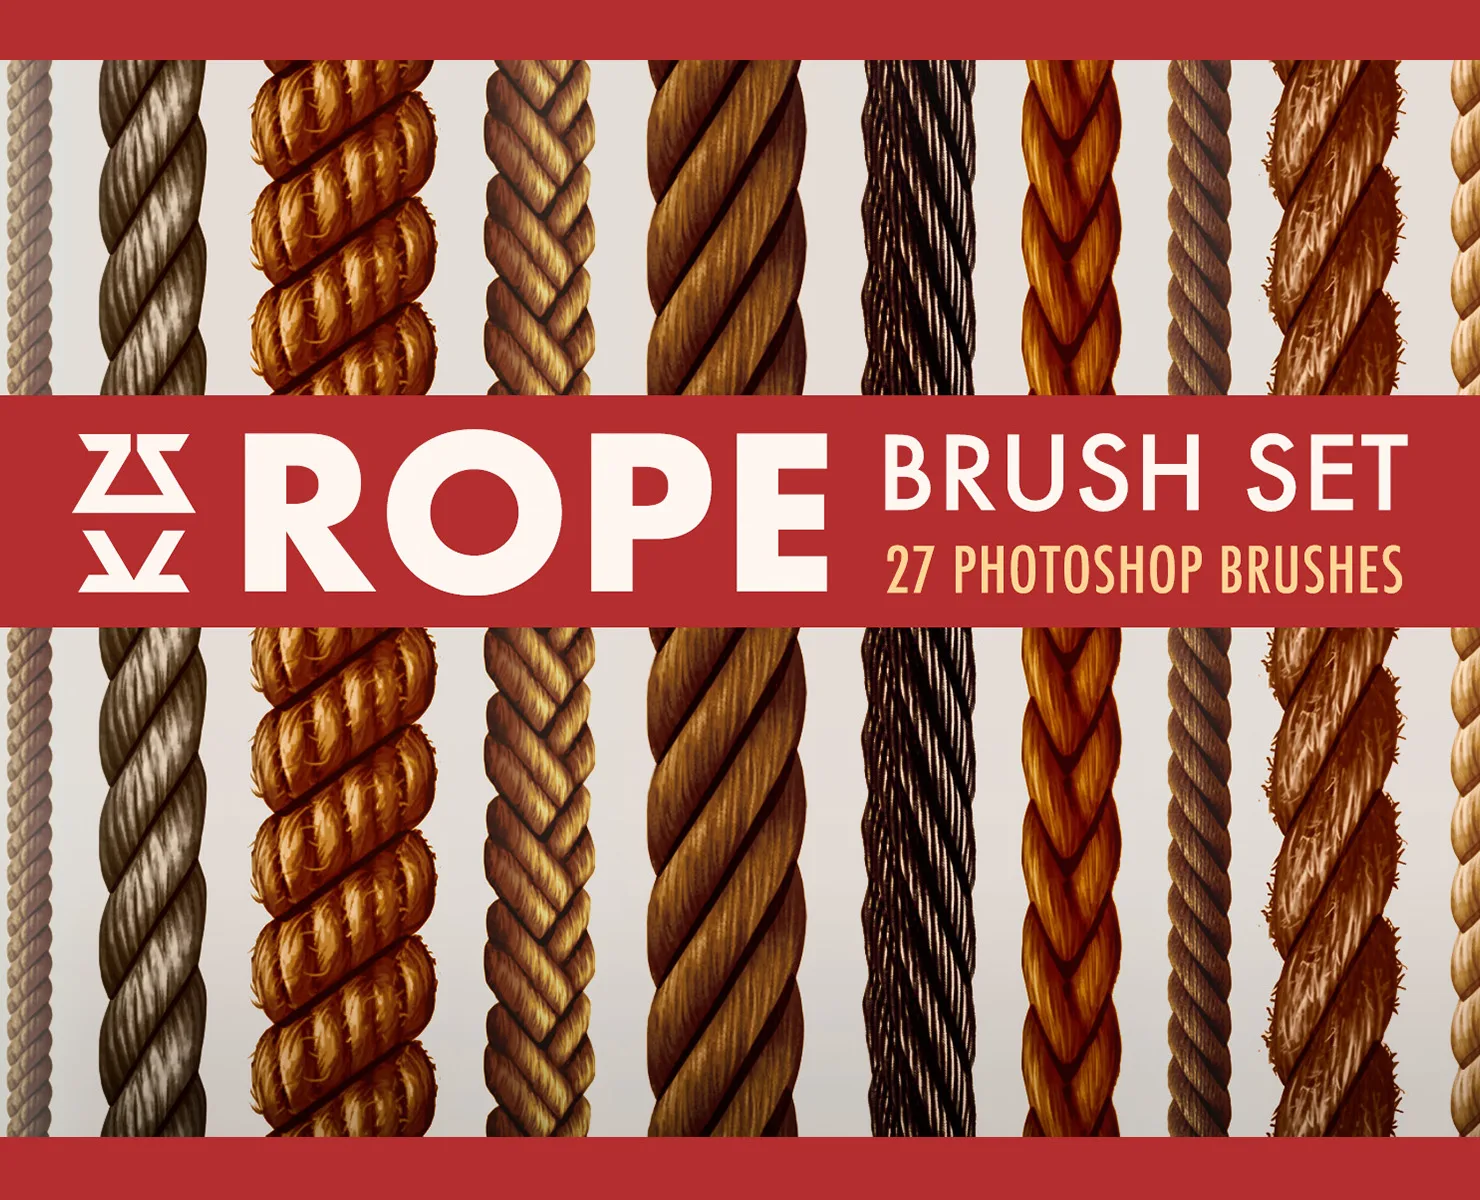 Rope Brush Set